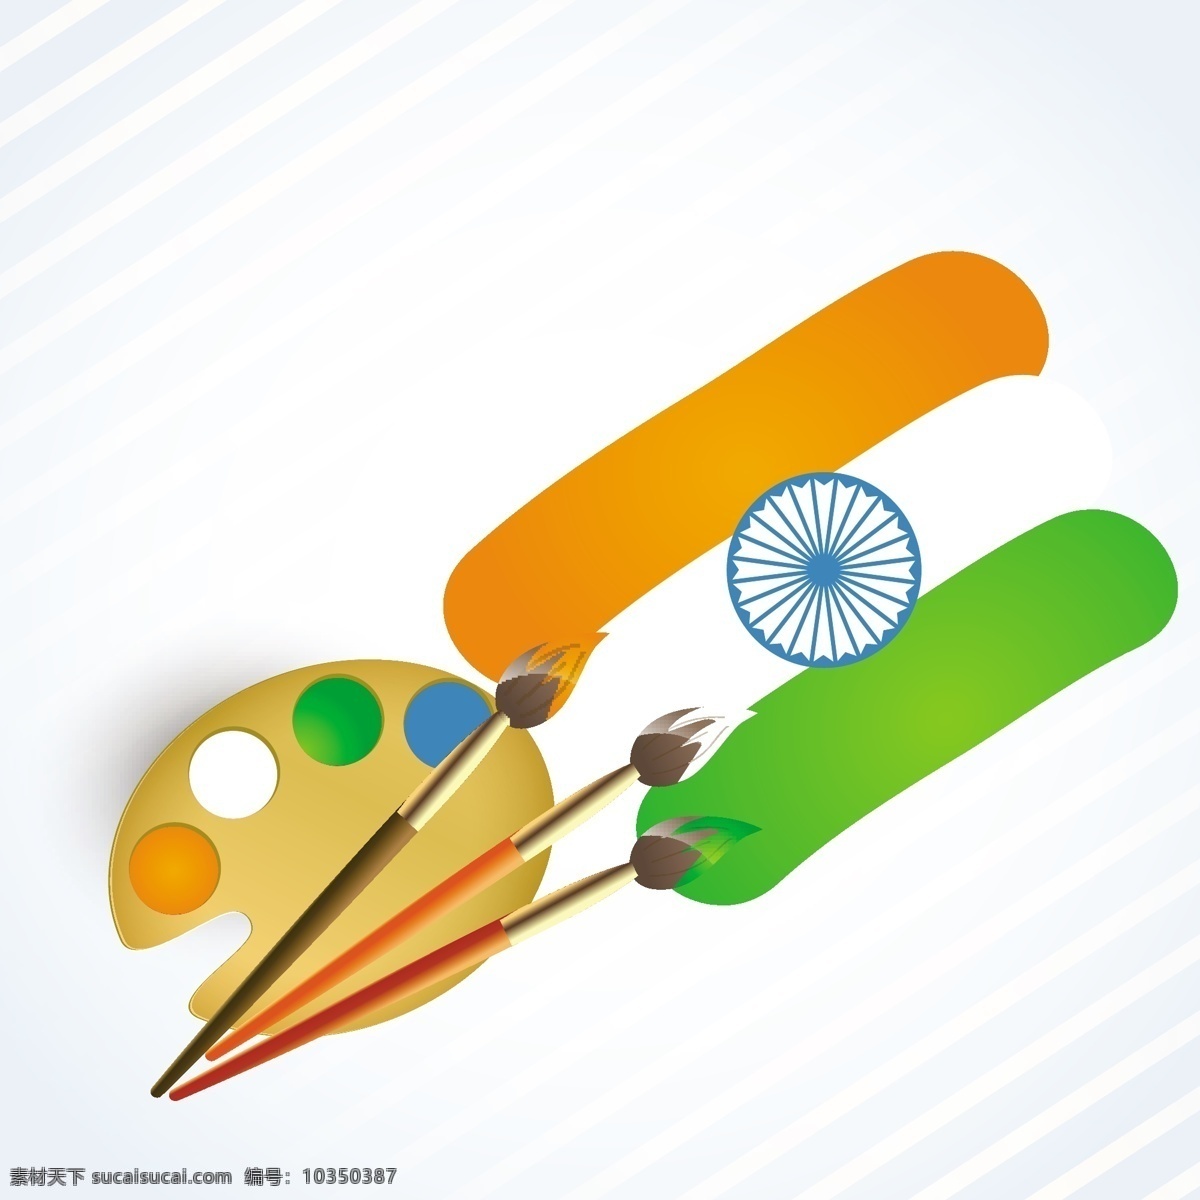 印度 国旗 调色板 画笔 背景 假期 印度国旗 庆祝独立日 传统 天 爱国 独立 白色